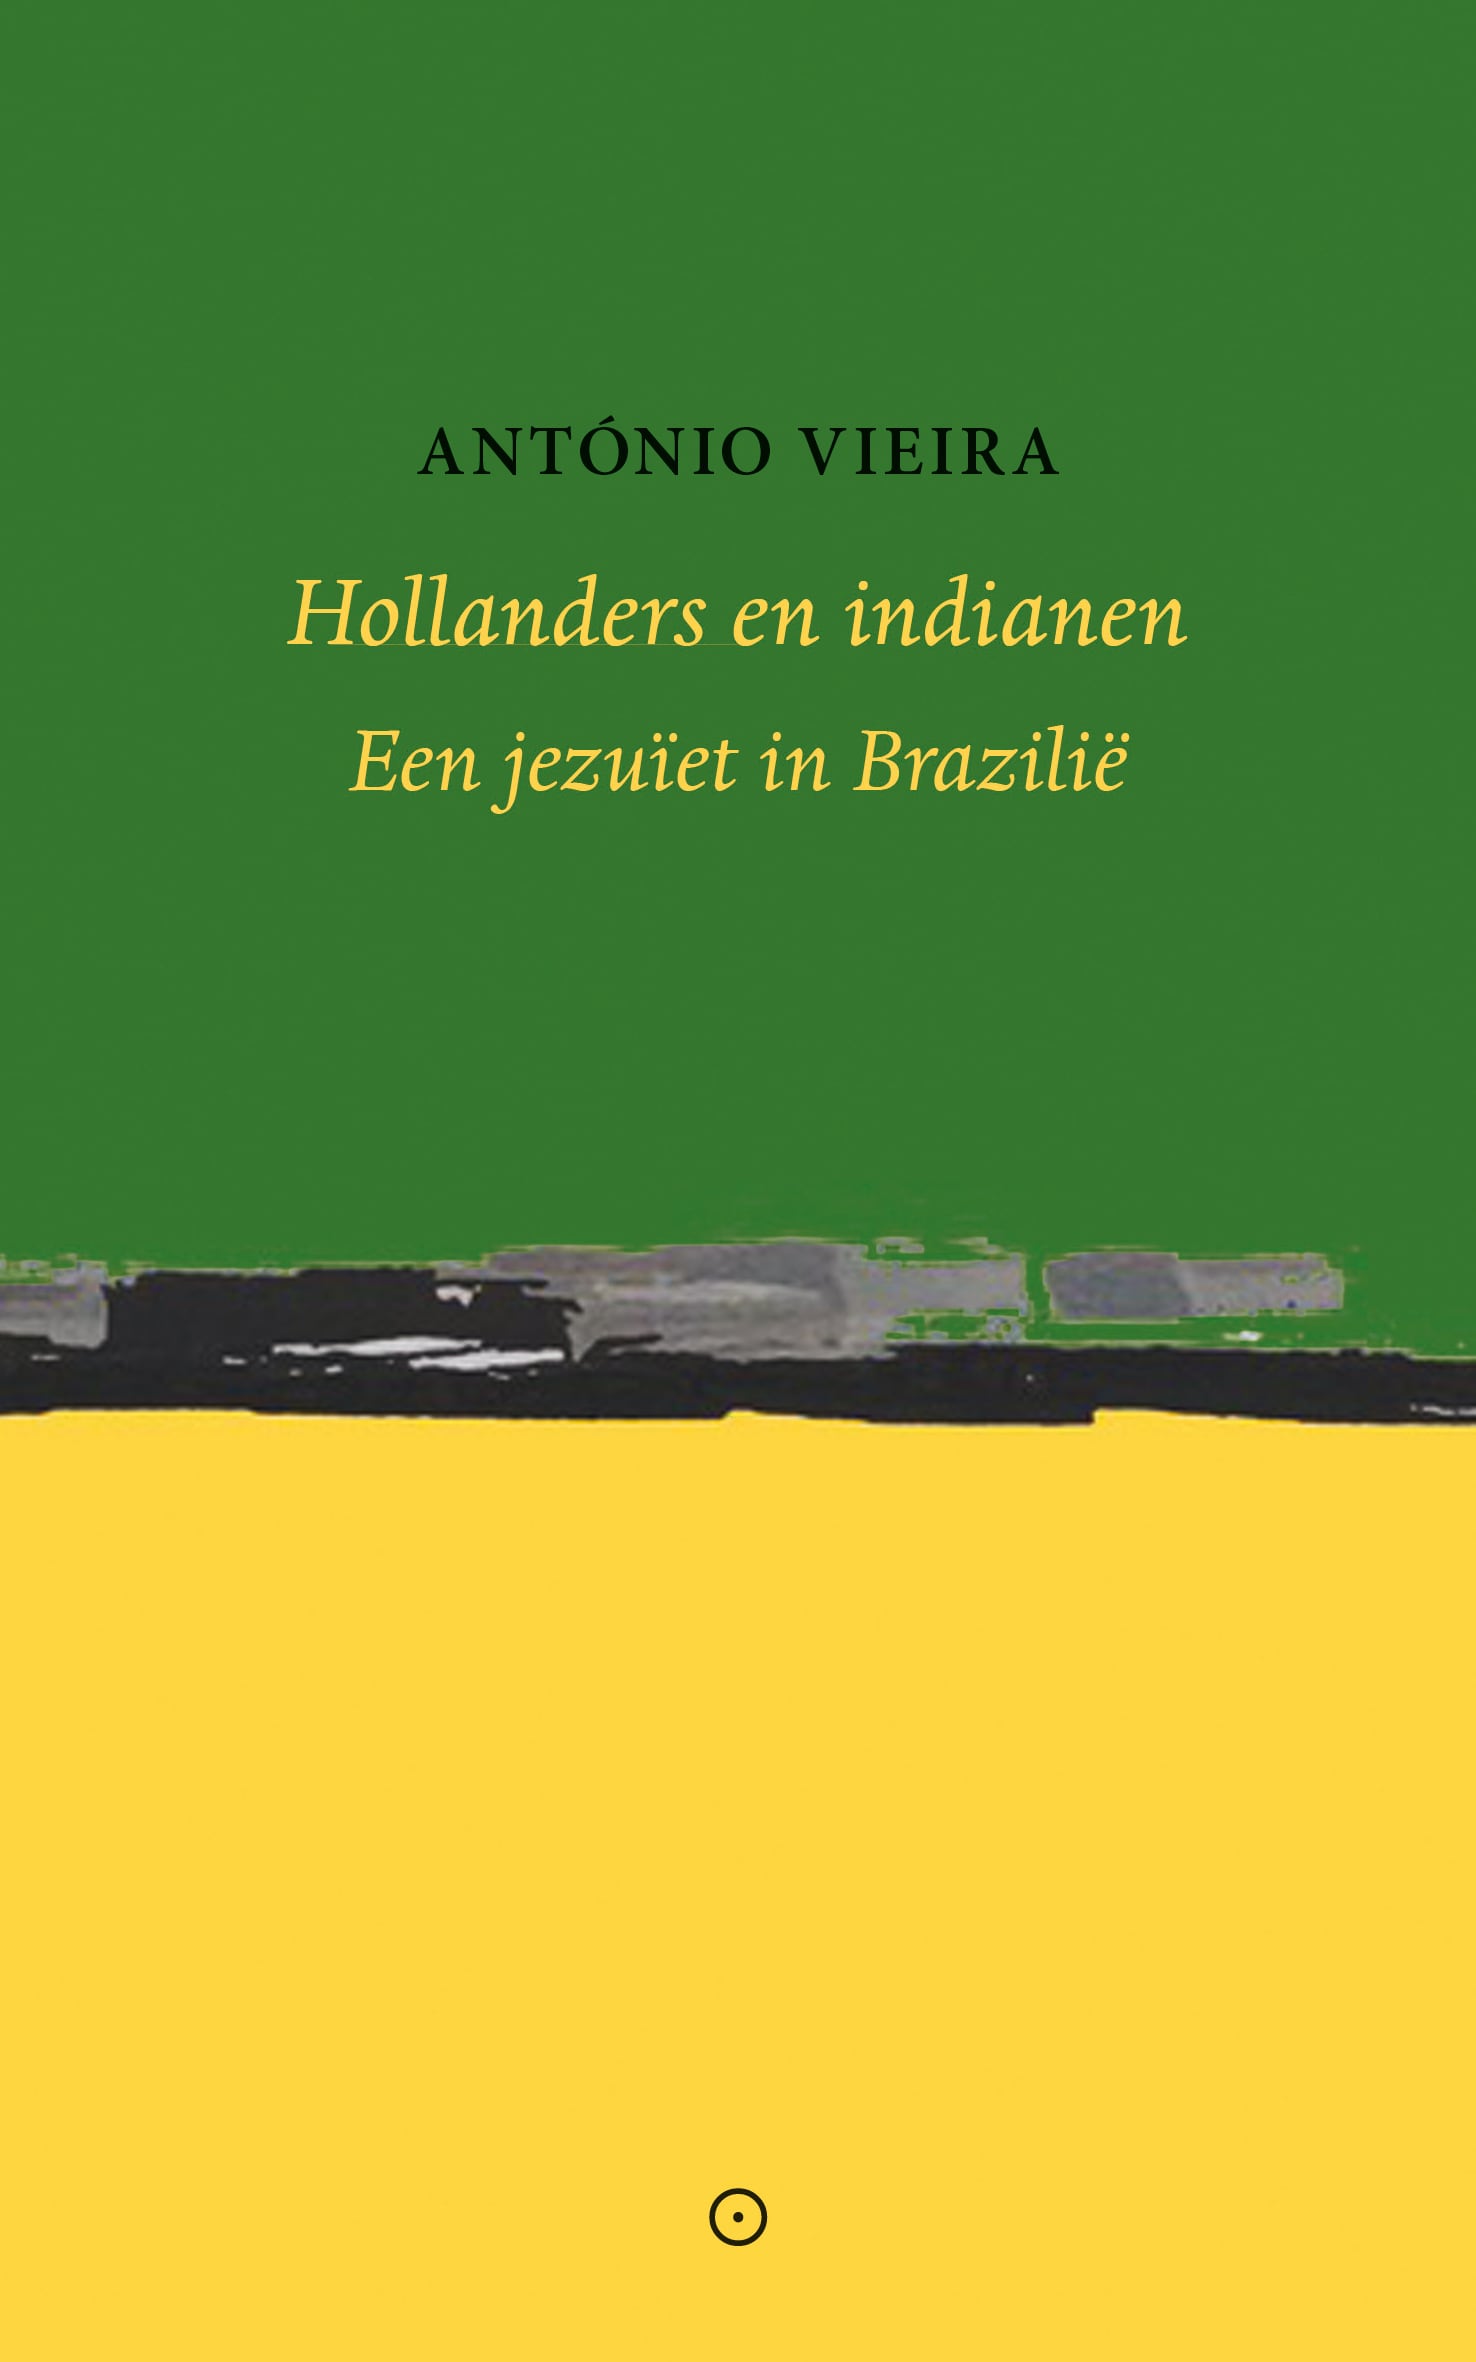 Hollanders en indianen - Antonio Vieira - Koppernik